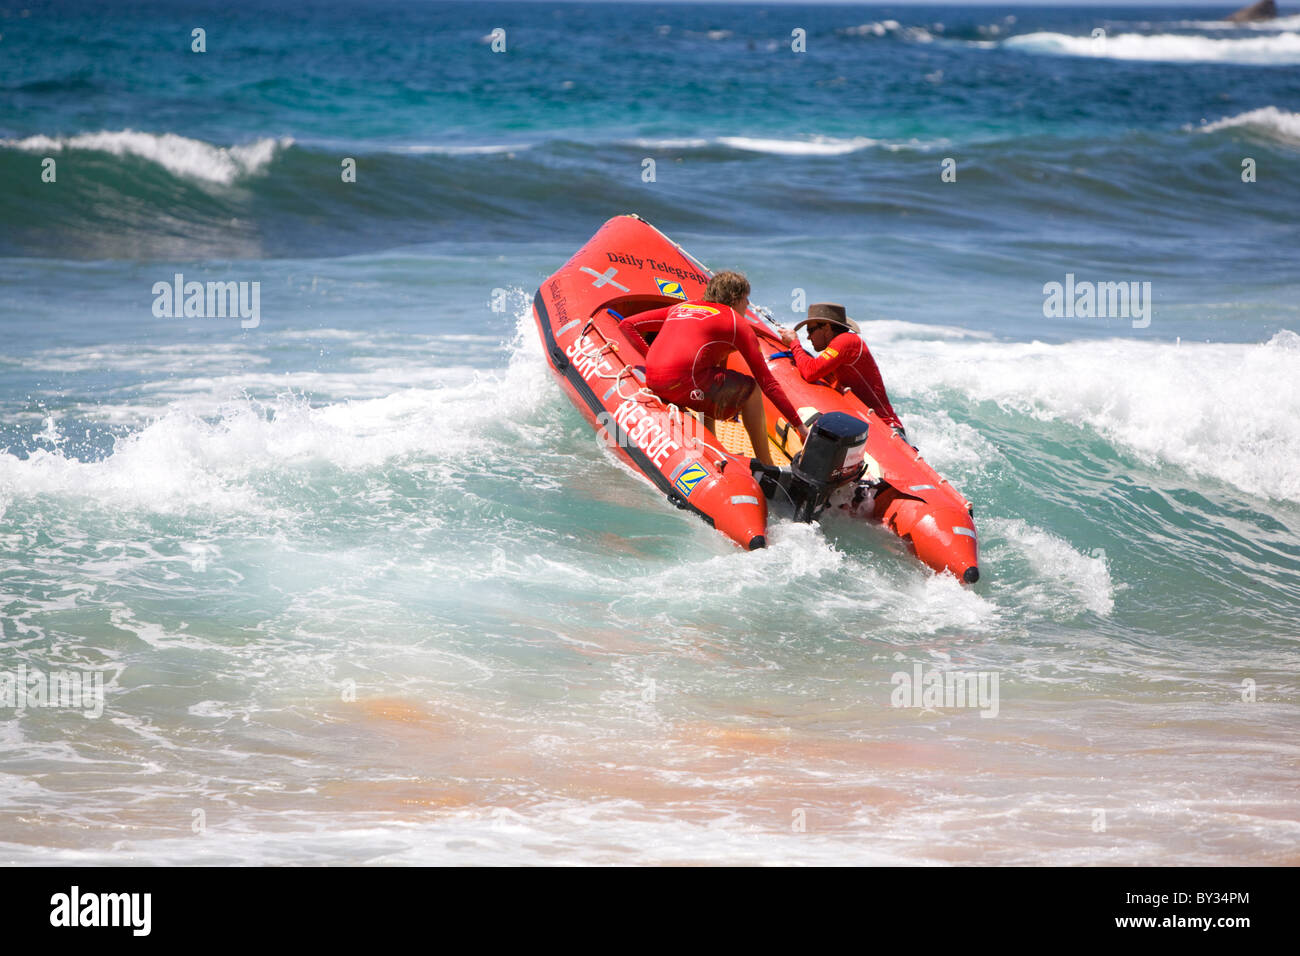 Deux sauveteurs de surf emportant leur bateau de sauvetage de surf IRB dans le surf, Avalon Beach, Sydney, Nouvelle-Galles du Sud Australie Banque D'Images